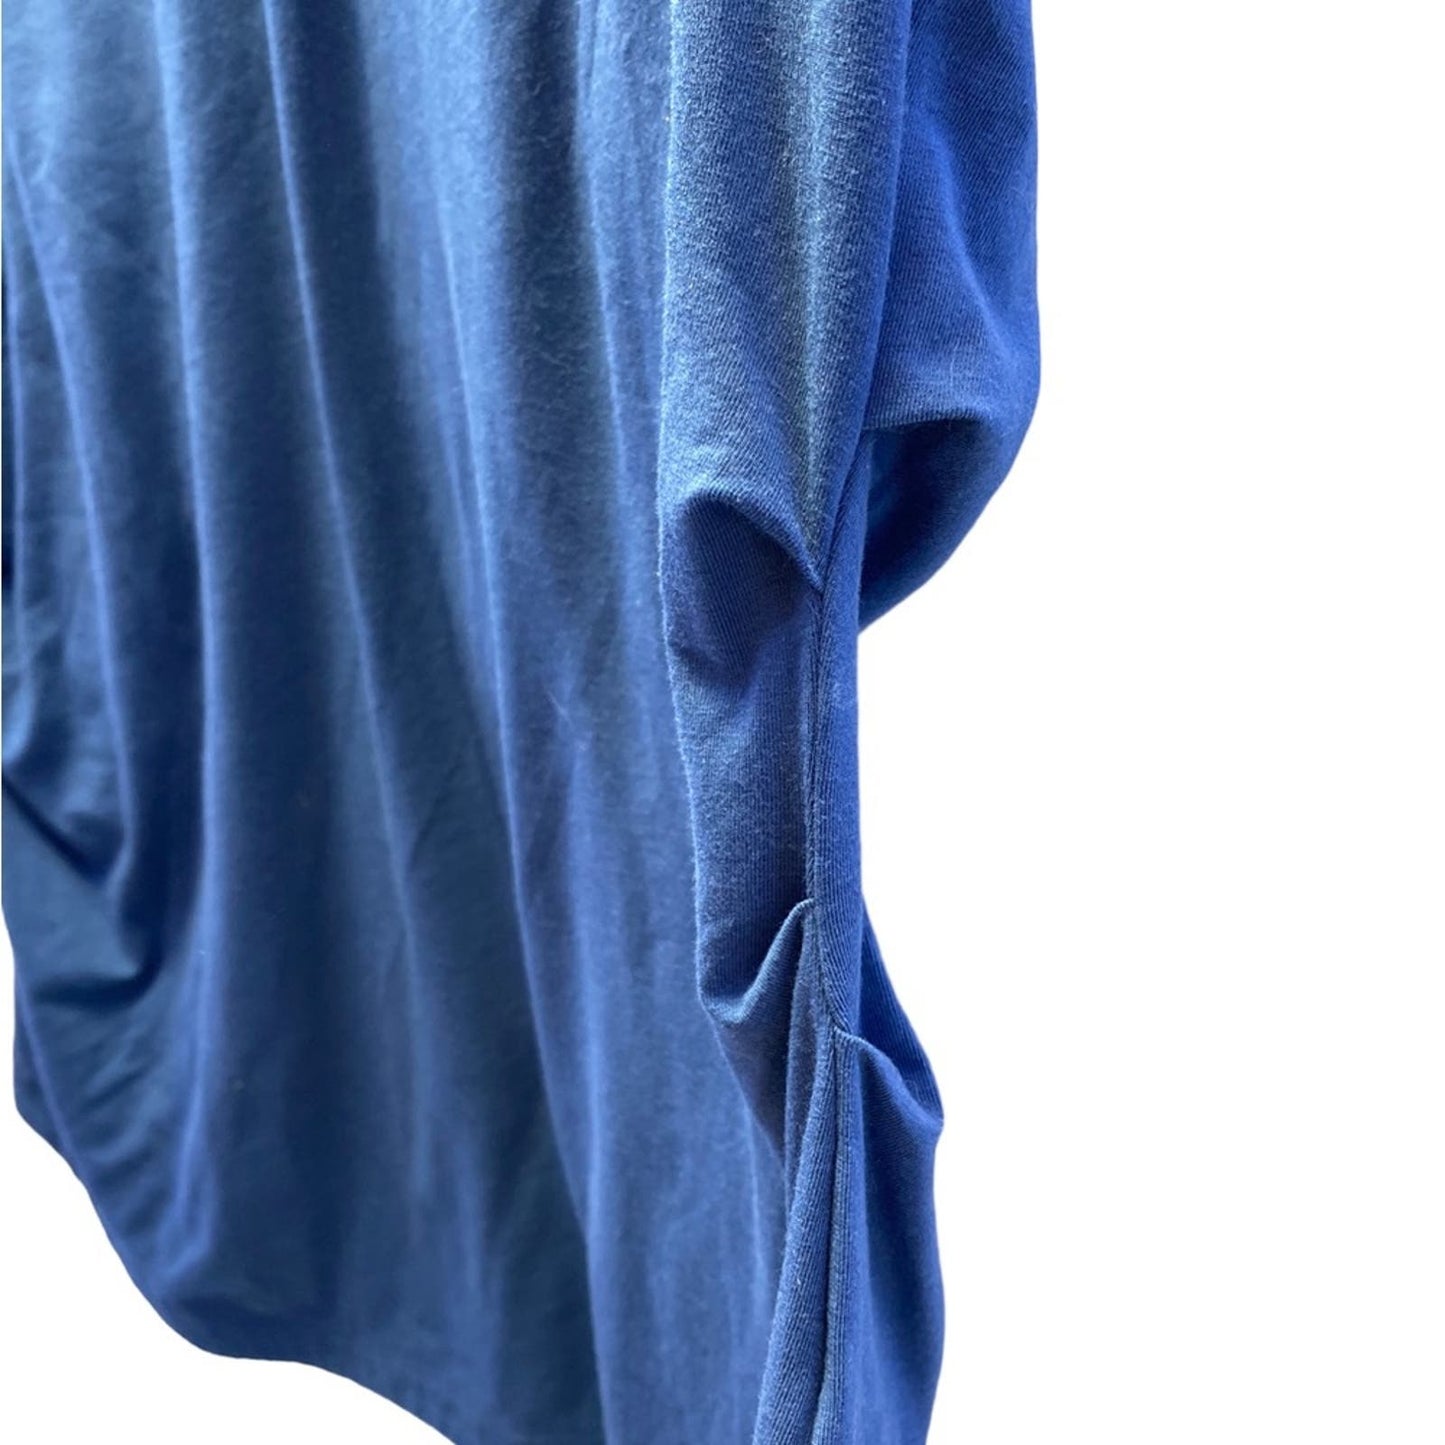 Athleta Slate Blue Sleeveless with ruffles on sides